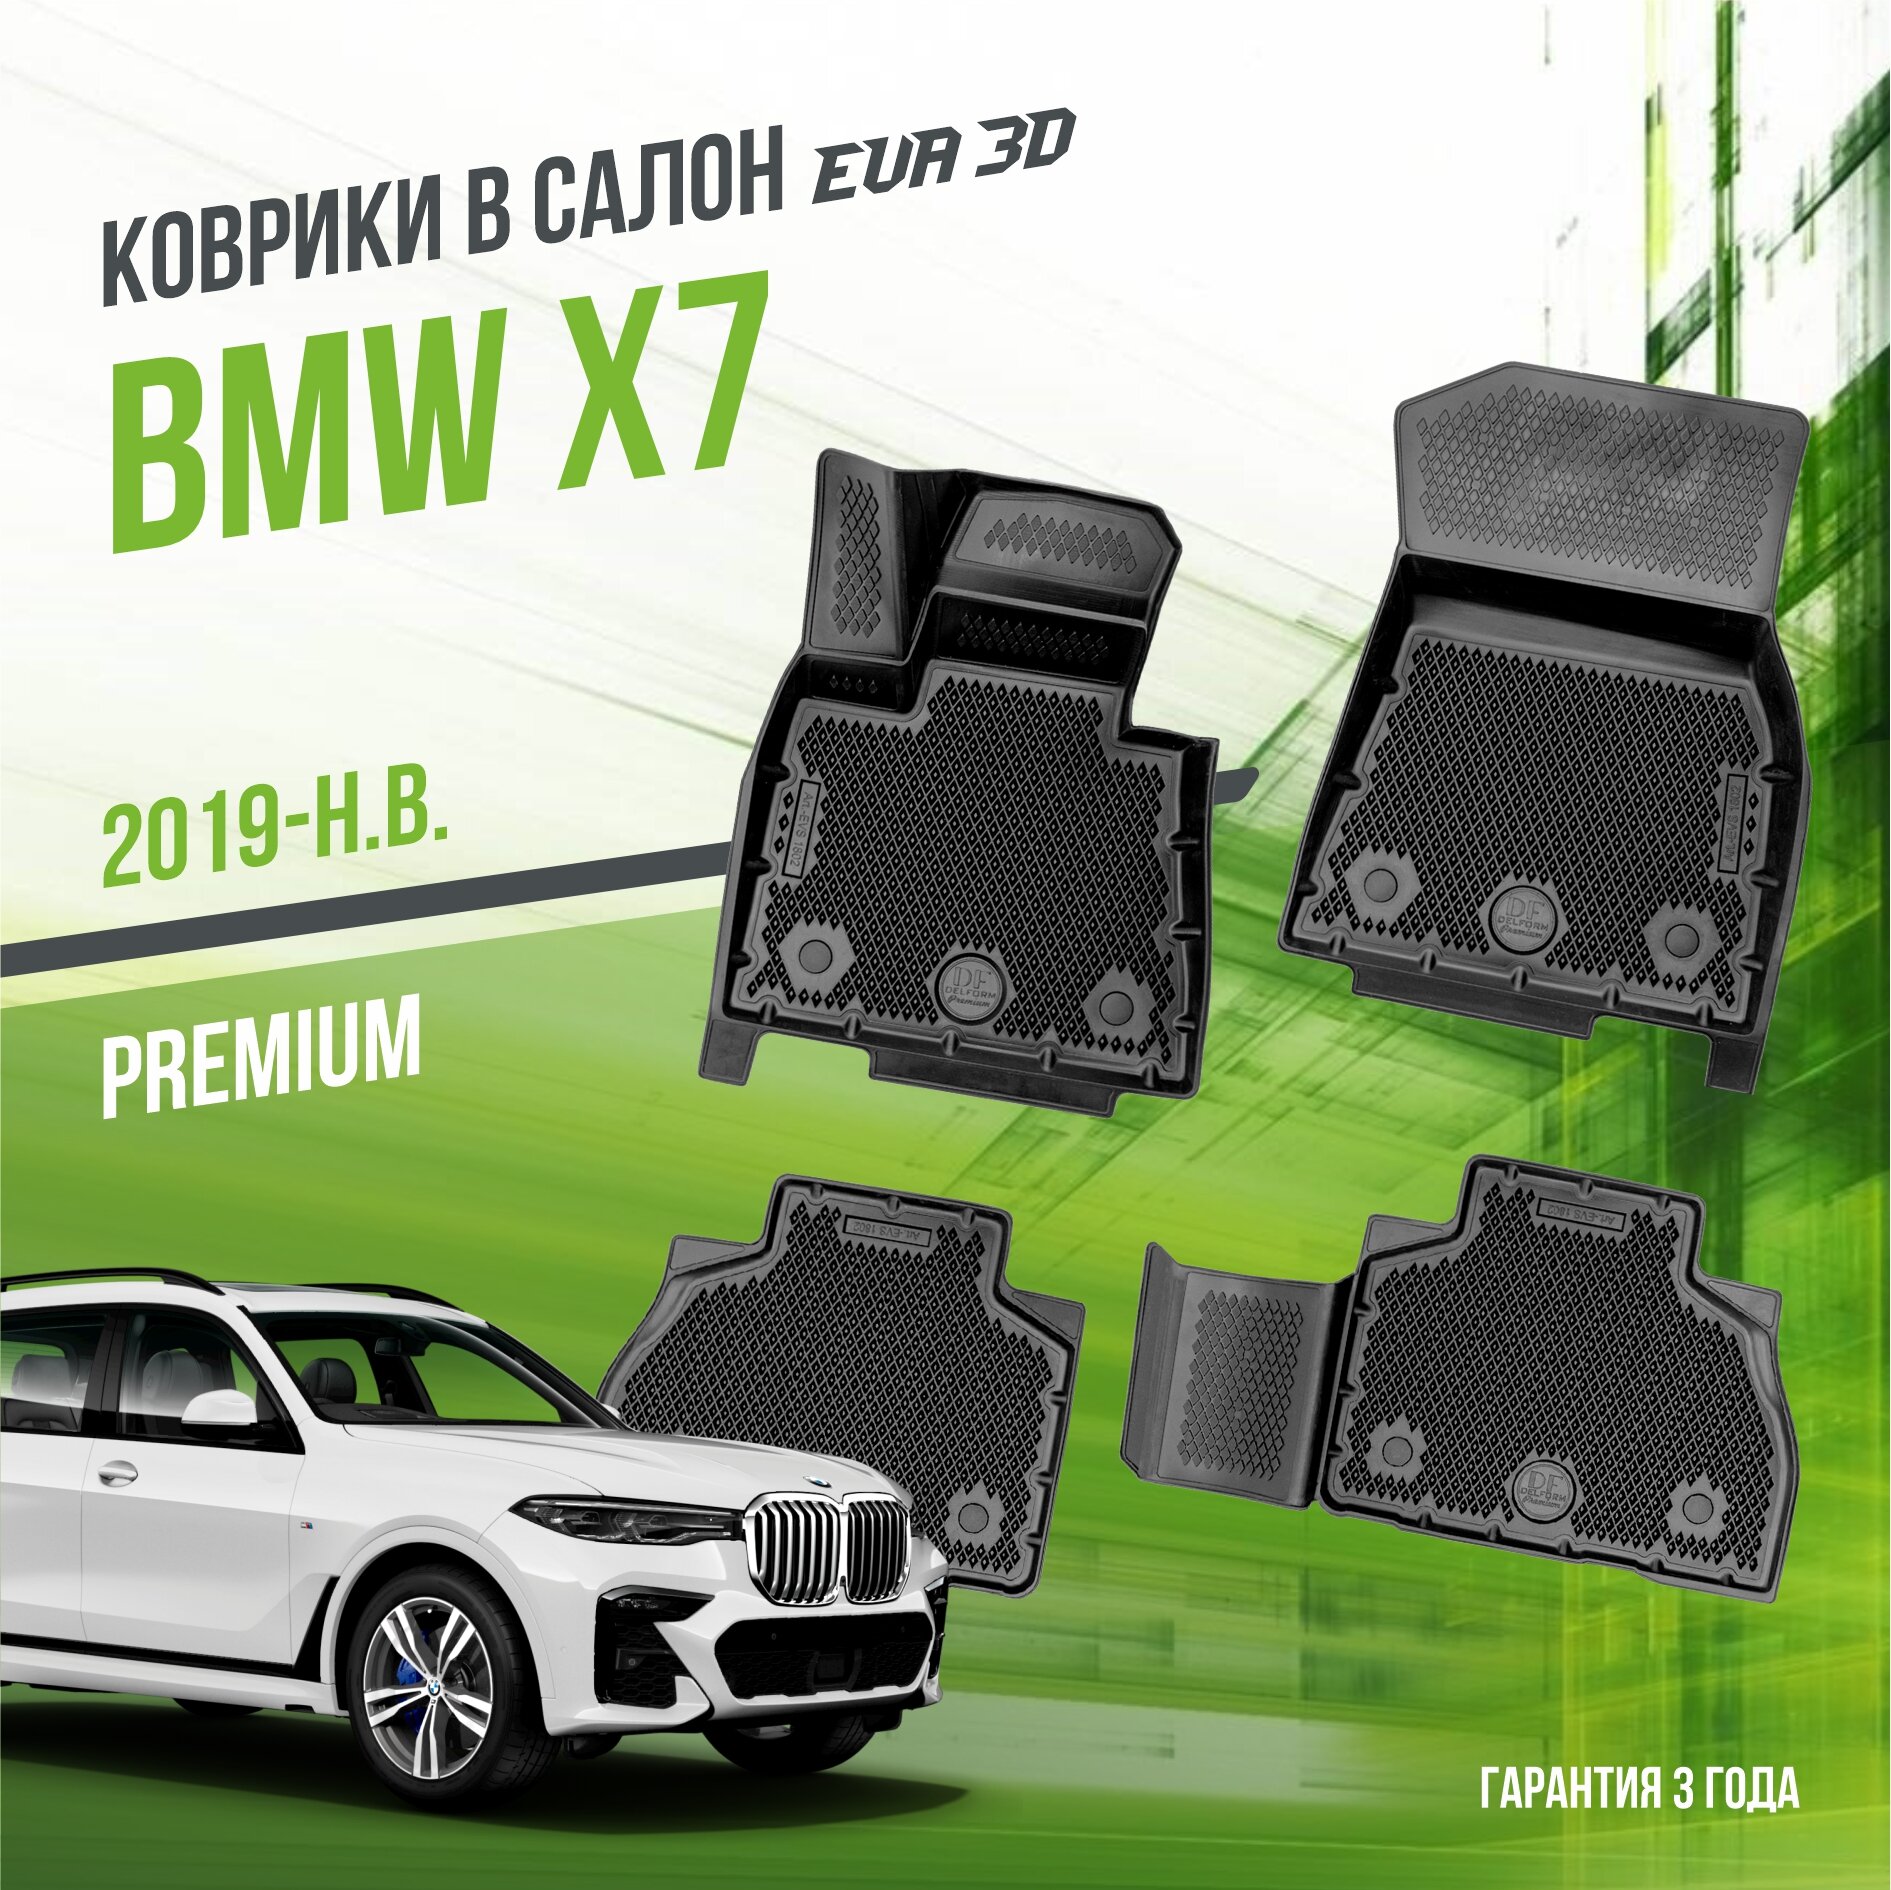 Коврики в салон BMW X7 (2019-н. в.) / БМВ Х7 / набор "Premium" ковров DelForm с бортами и ячейками EVA 3D / ЭВА 3Д